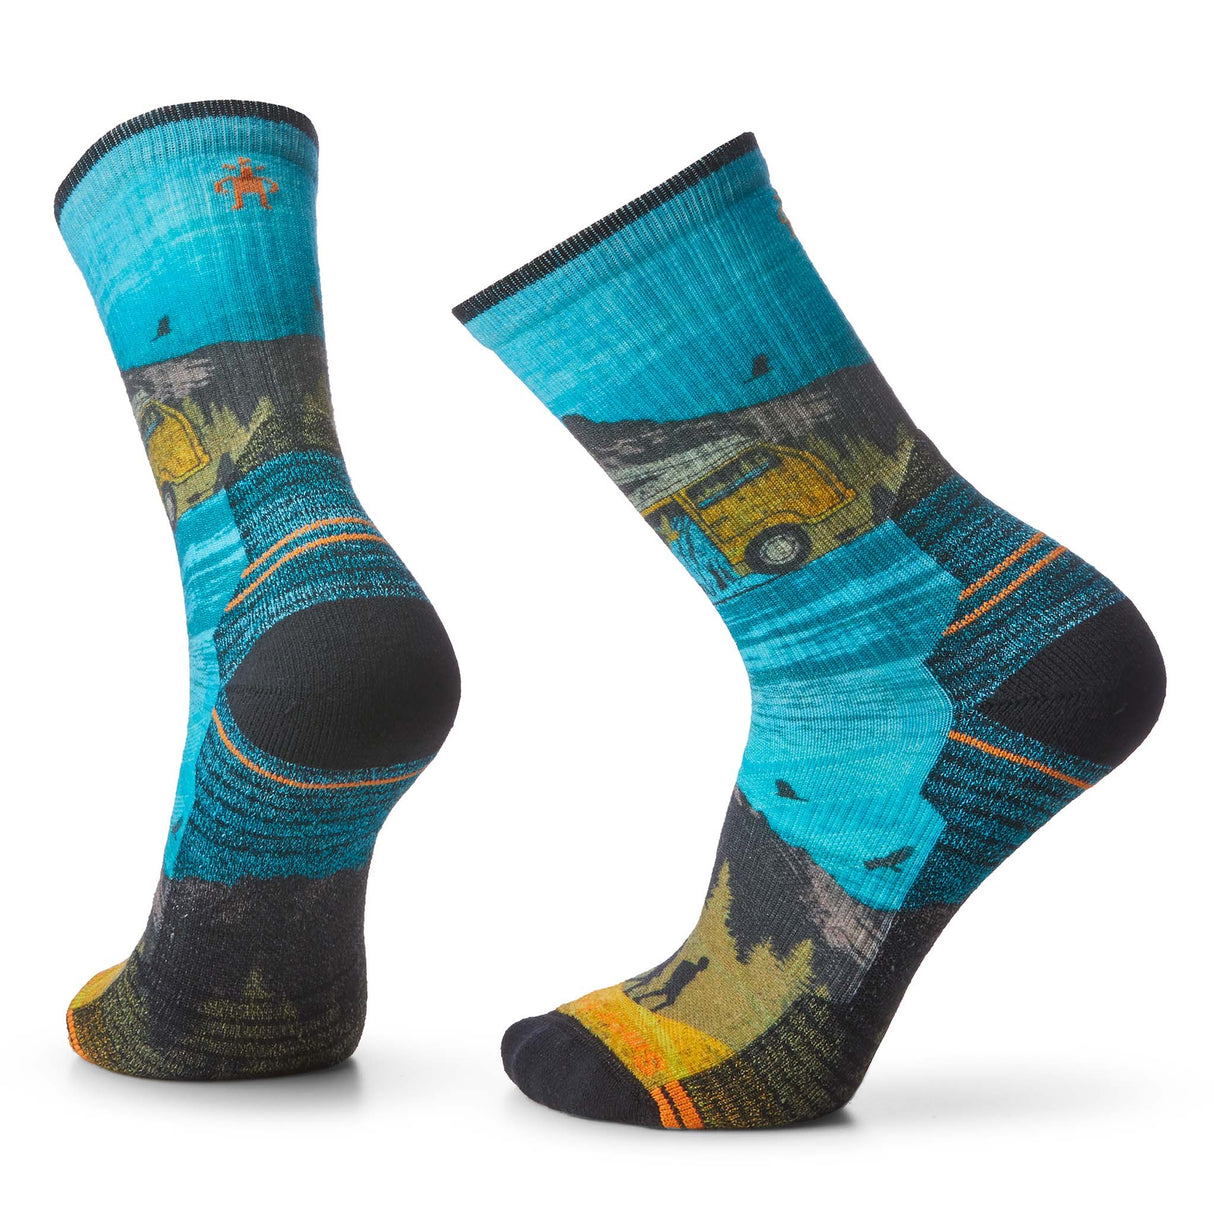 Smartwool chaussettes de randonnée imprimées matelassées homme - bleu imprimé